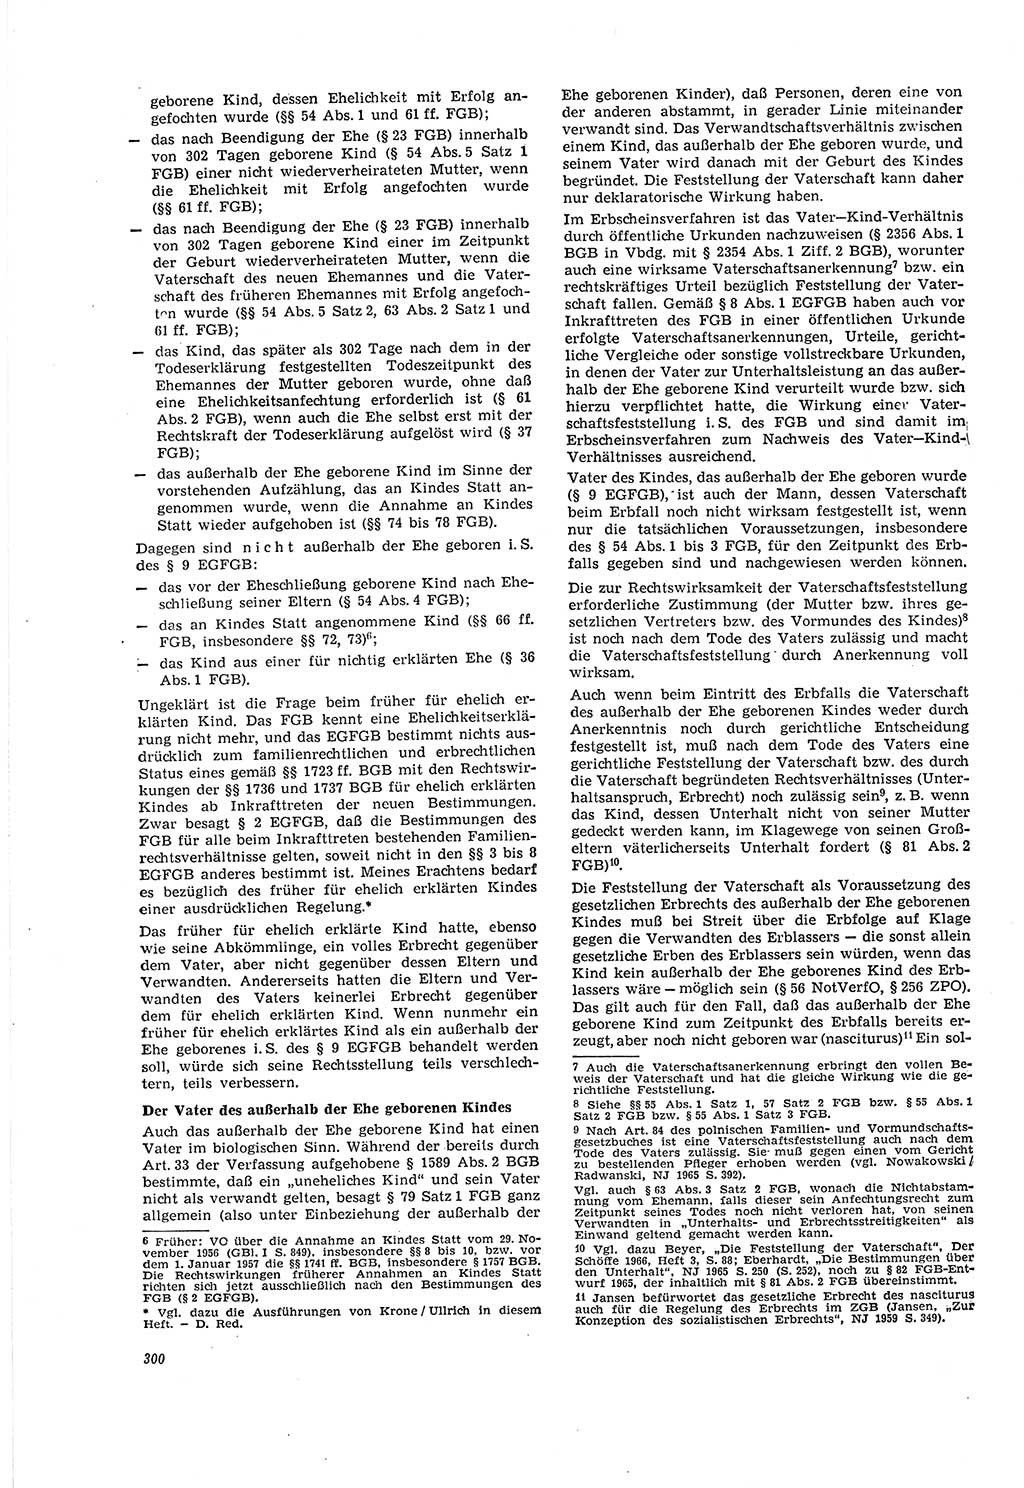 Neue Justiz (NJ), Zeitschrift für Recht und Rechtswissenschaft [Deutsche Demokratische Republik (DDR)], 20. Jahrgang 1966, Seite 300 (NJ DDR 1966, S. 300)